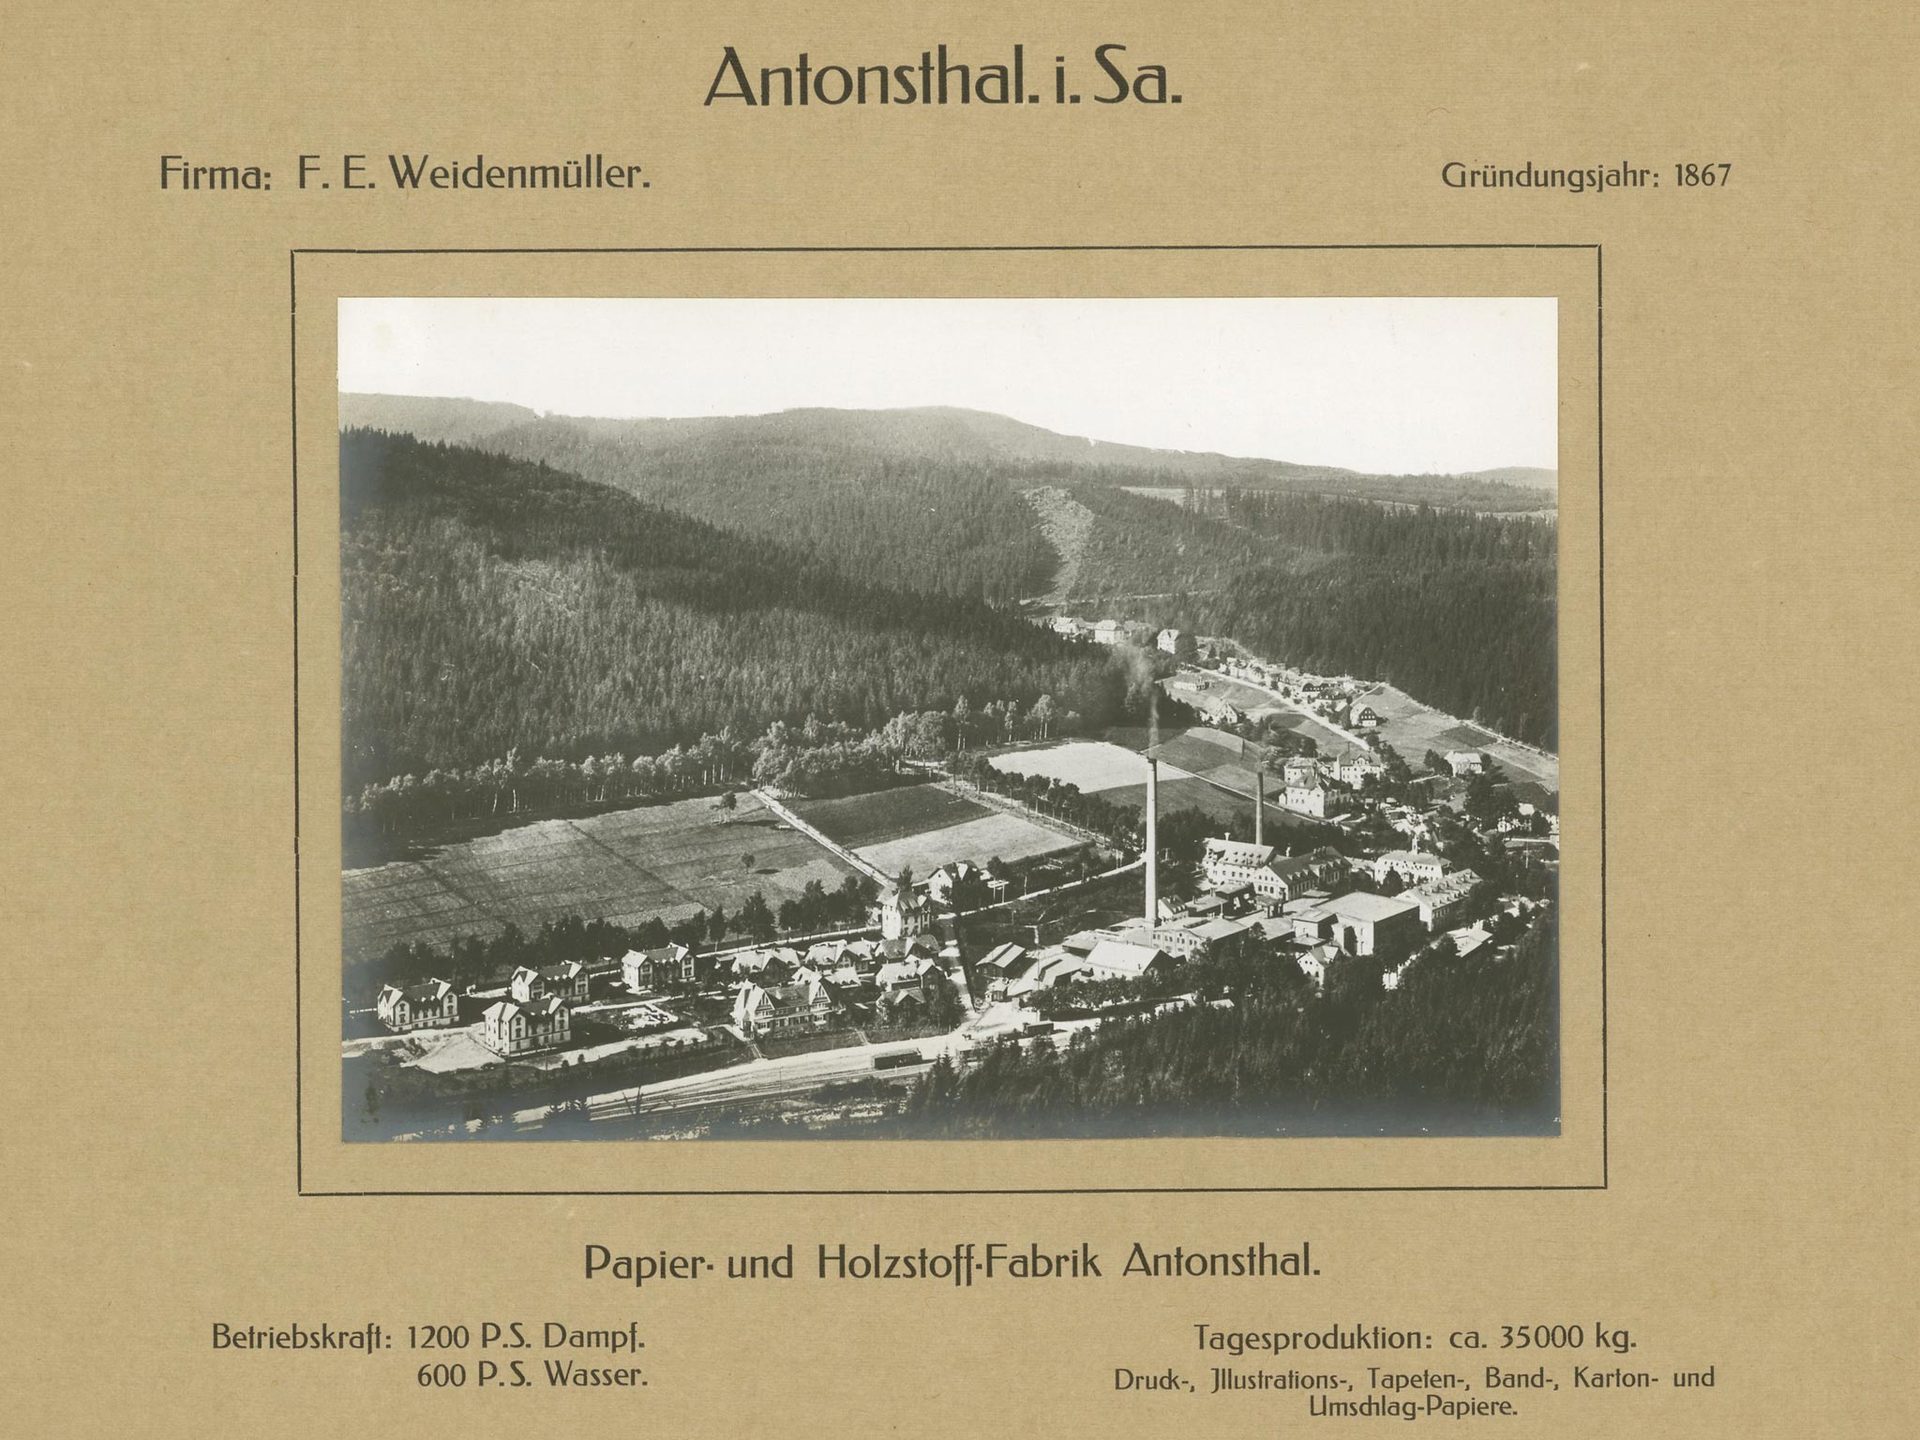 Papier- und Holzstoff-Fabrik Antonsthal der Firma F. E. Weidenmüller